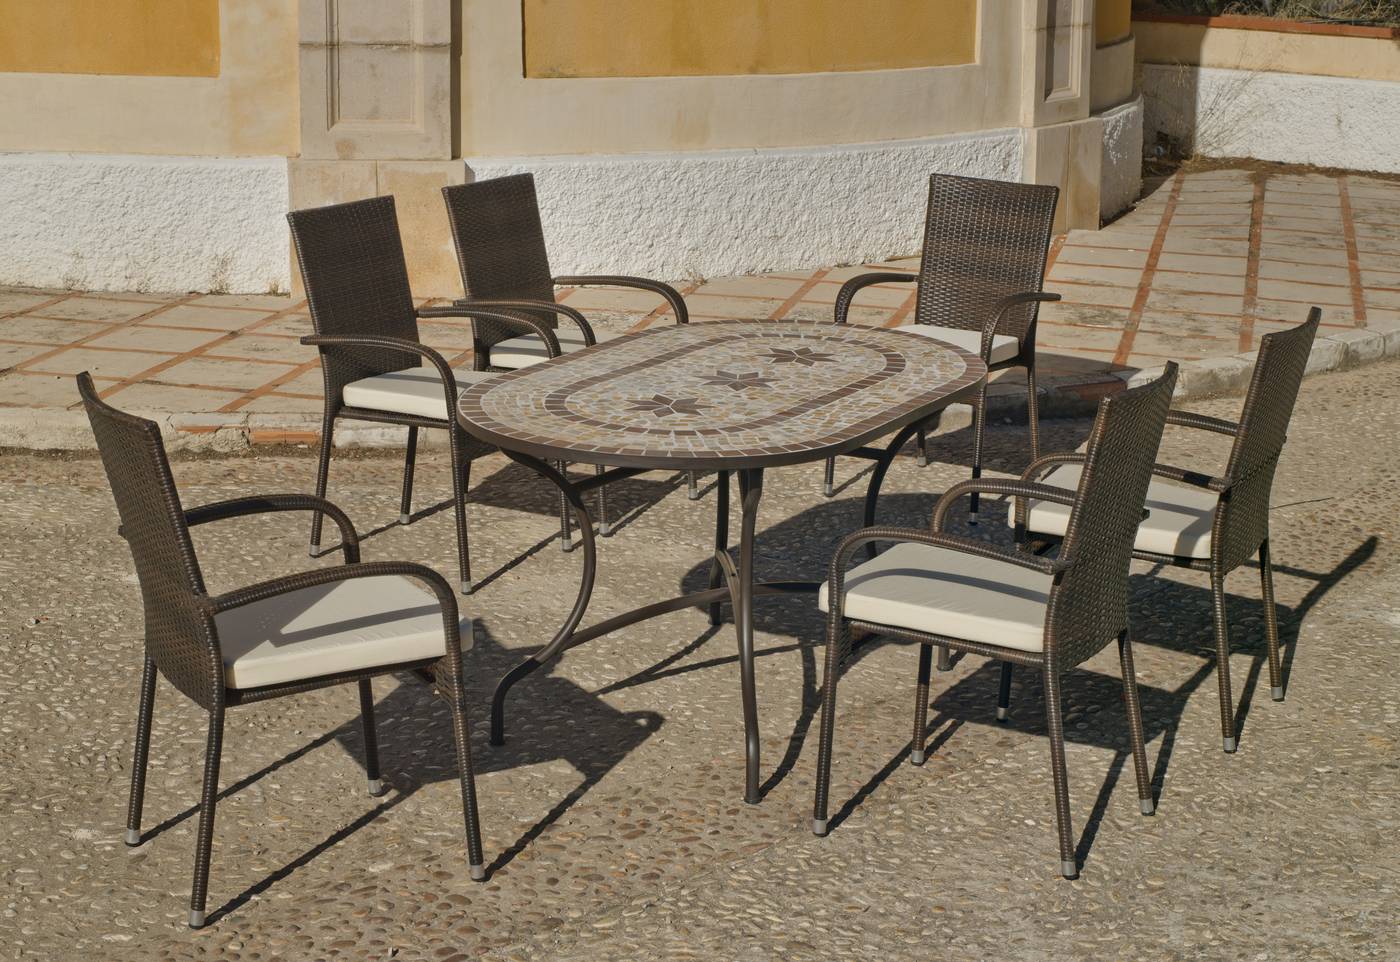 Conjunto para terraza o jardín de forja: 1 mesa con tablero mosaico + 4 sillones de ratán sintético + 4 cojines. Mesa válida para 6 sillones.